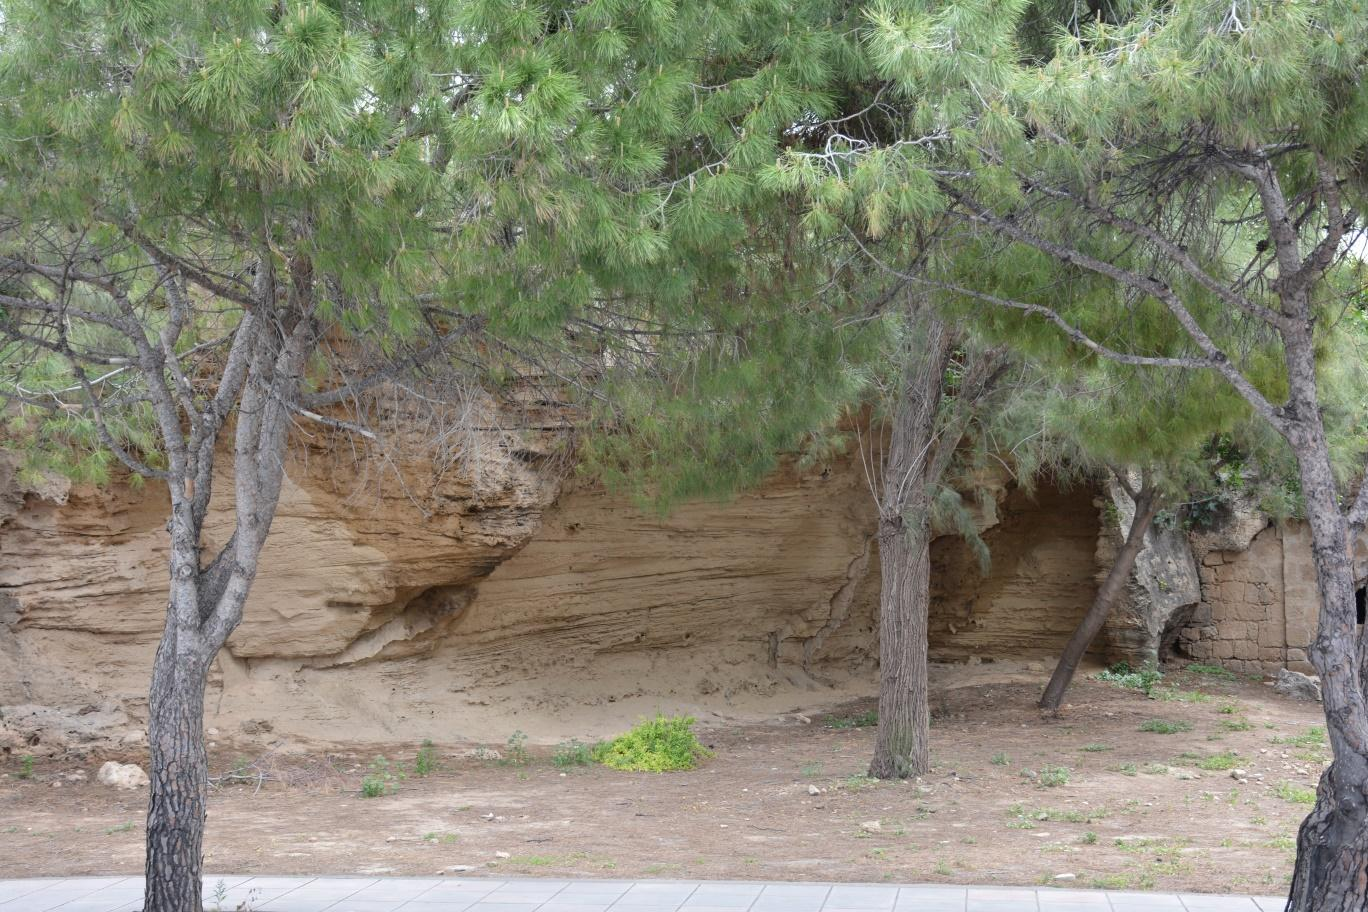 Εικόνα 4.1.29α: Λόφος Φάμπρικας. Δείγμα 30 Προέλευση: Κύπρος/Πάφος/Δυτικό τοίχος Νέας Πάφου. Ημερομηνία δειγματοληψίας: 16/4/15.